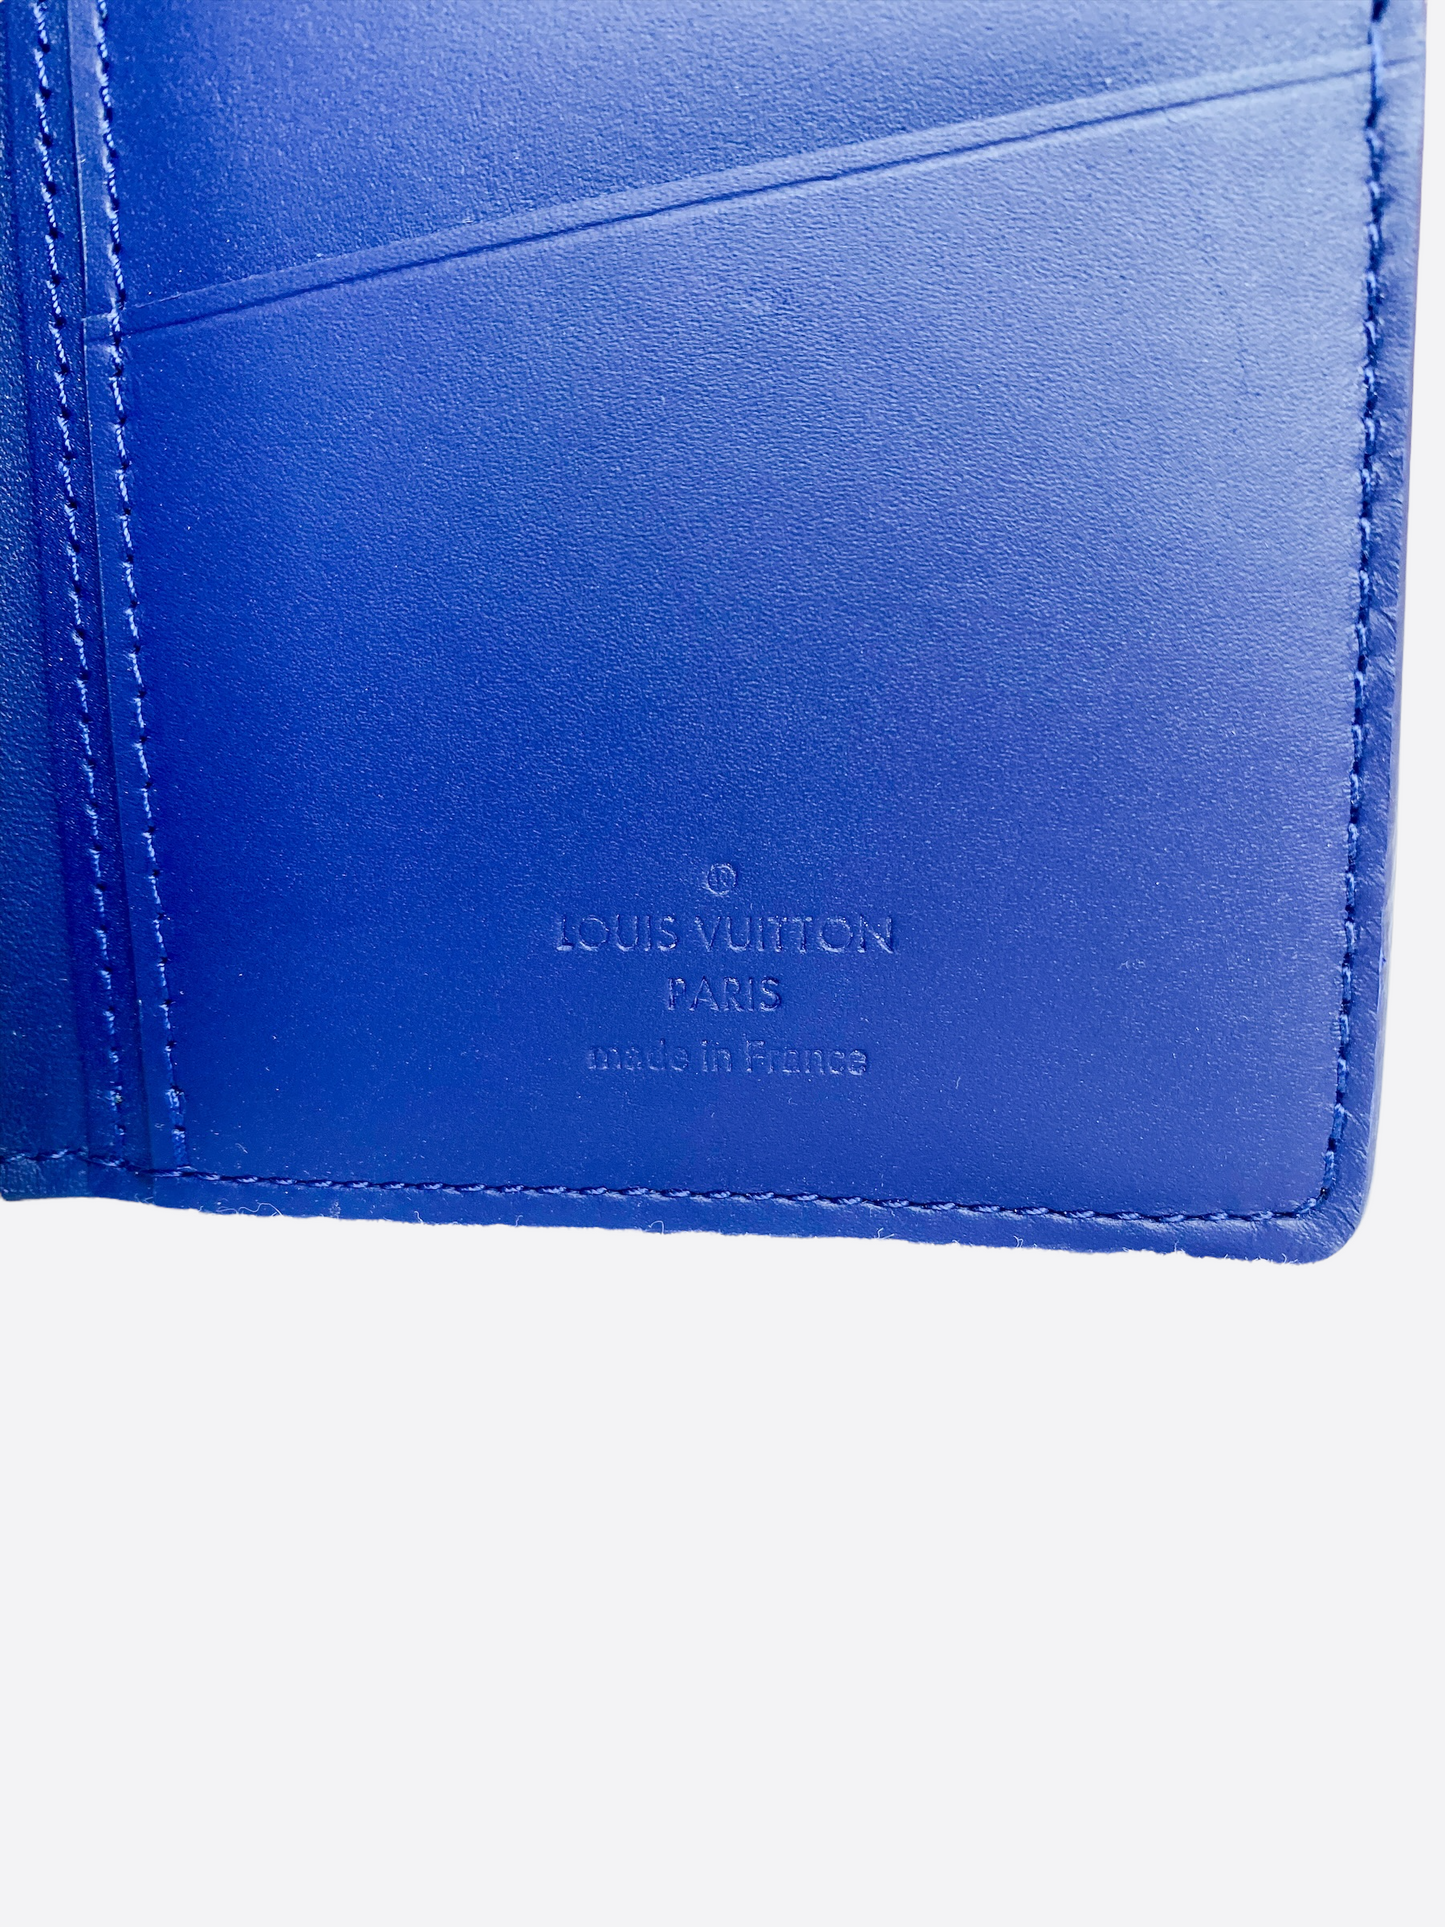 Louis Vuitton Brazza Monogram Bandana Leather Print Wallet